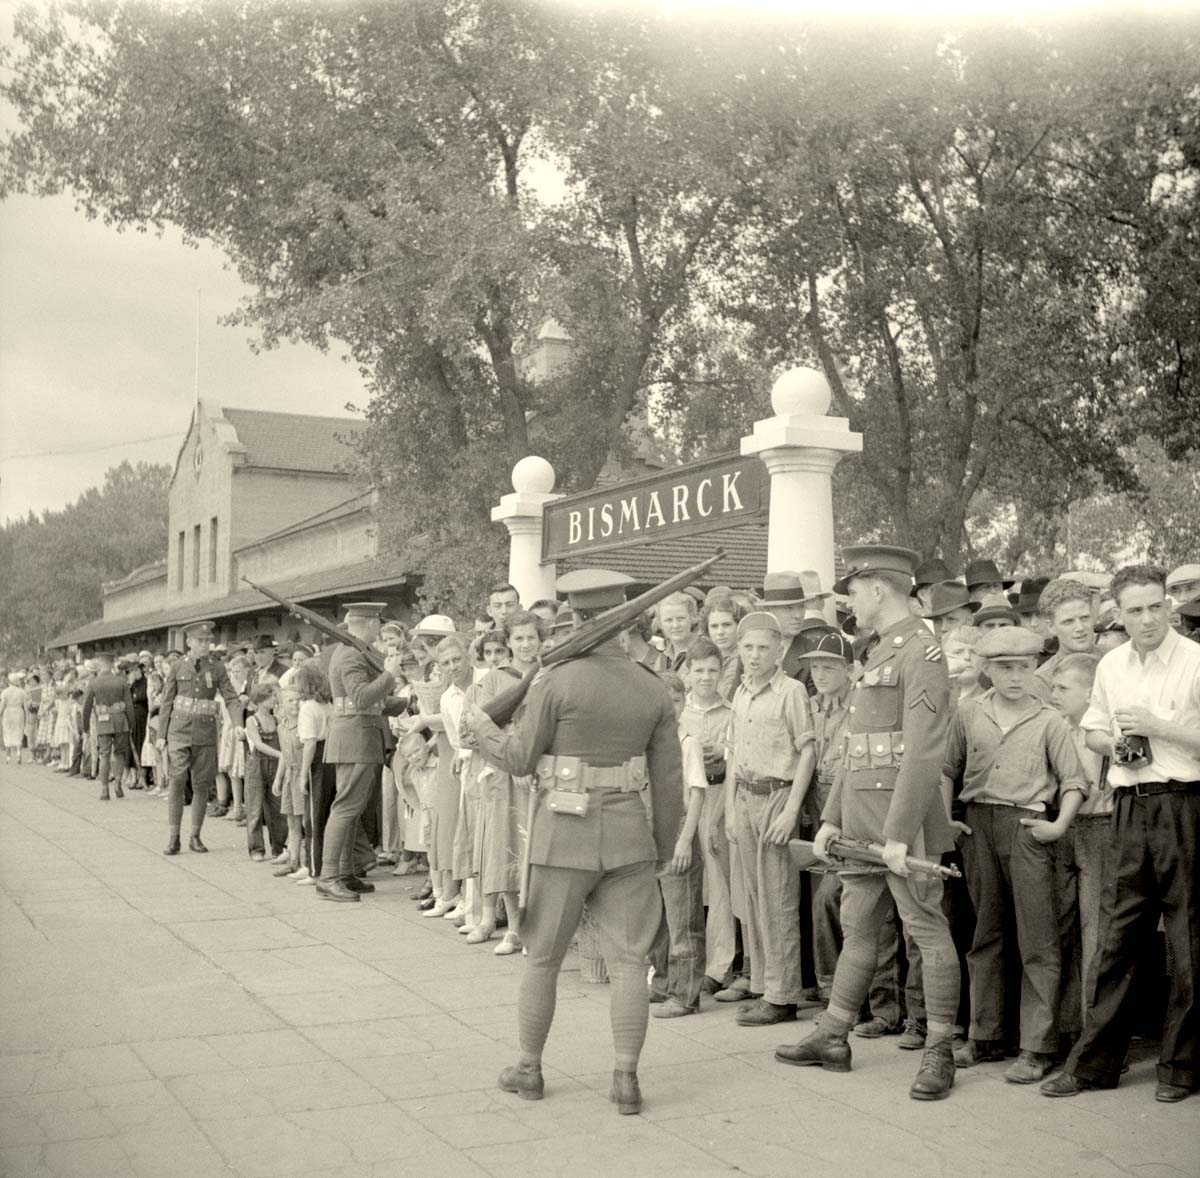 Train Station, Crowds greet President Roosevelt at Bismarck, 1936